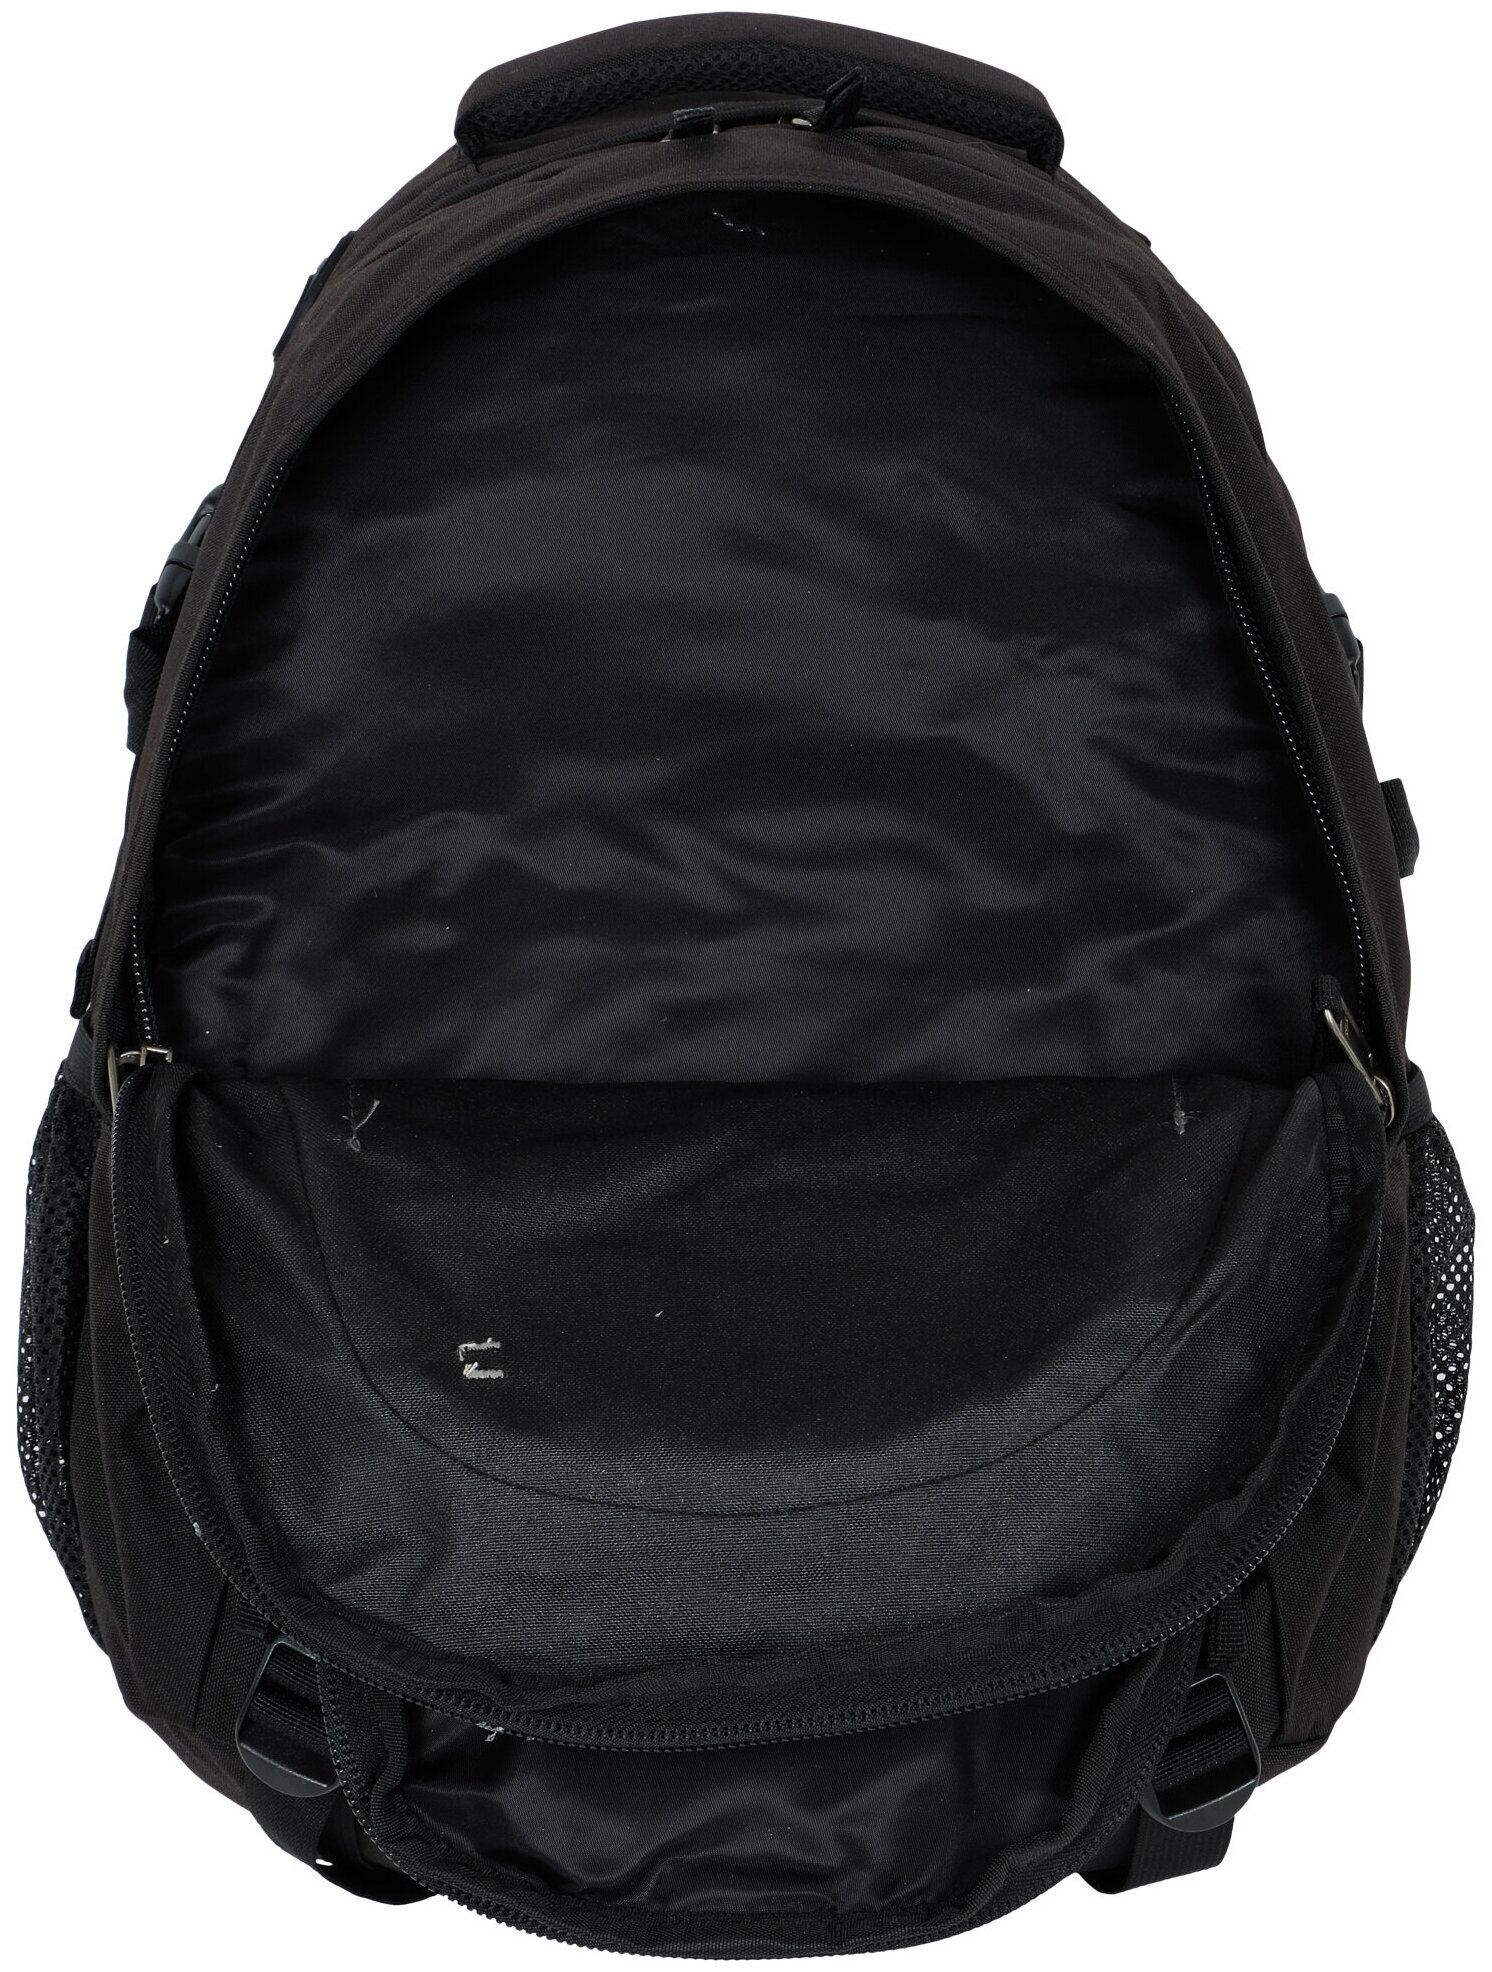 Мультиспортивный рюкзак POLAR П1002 27, черный